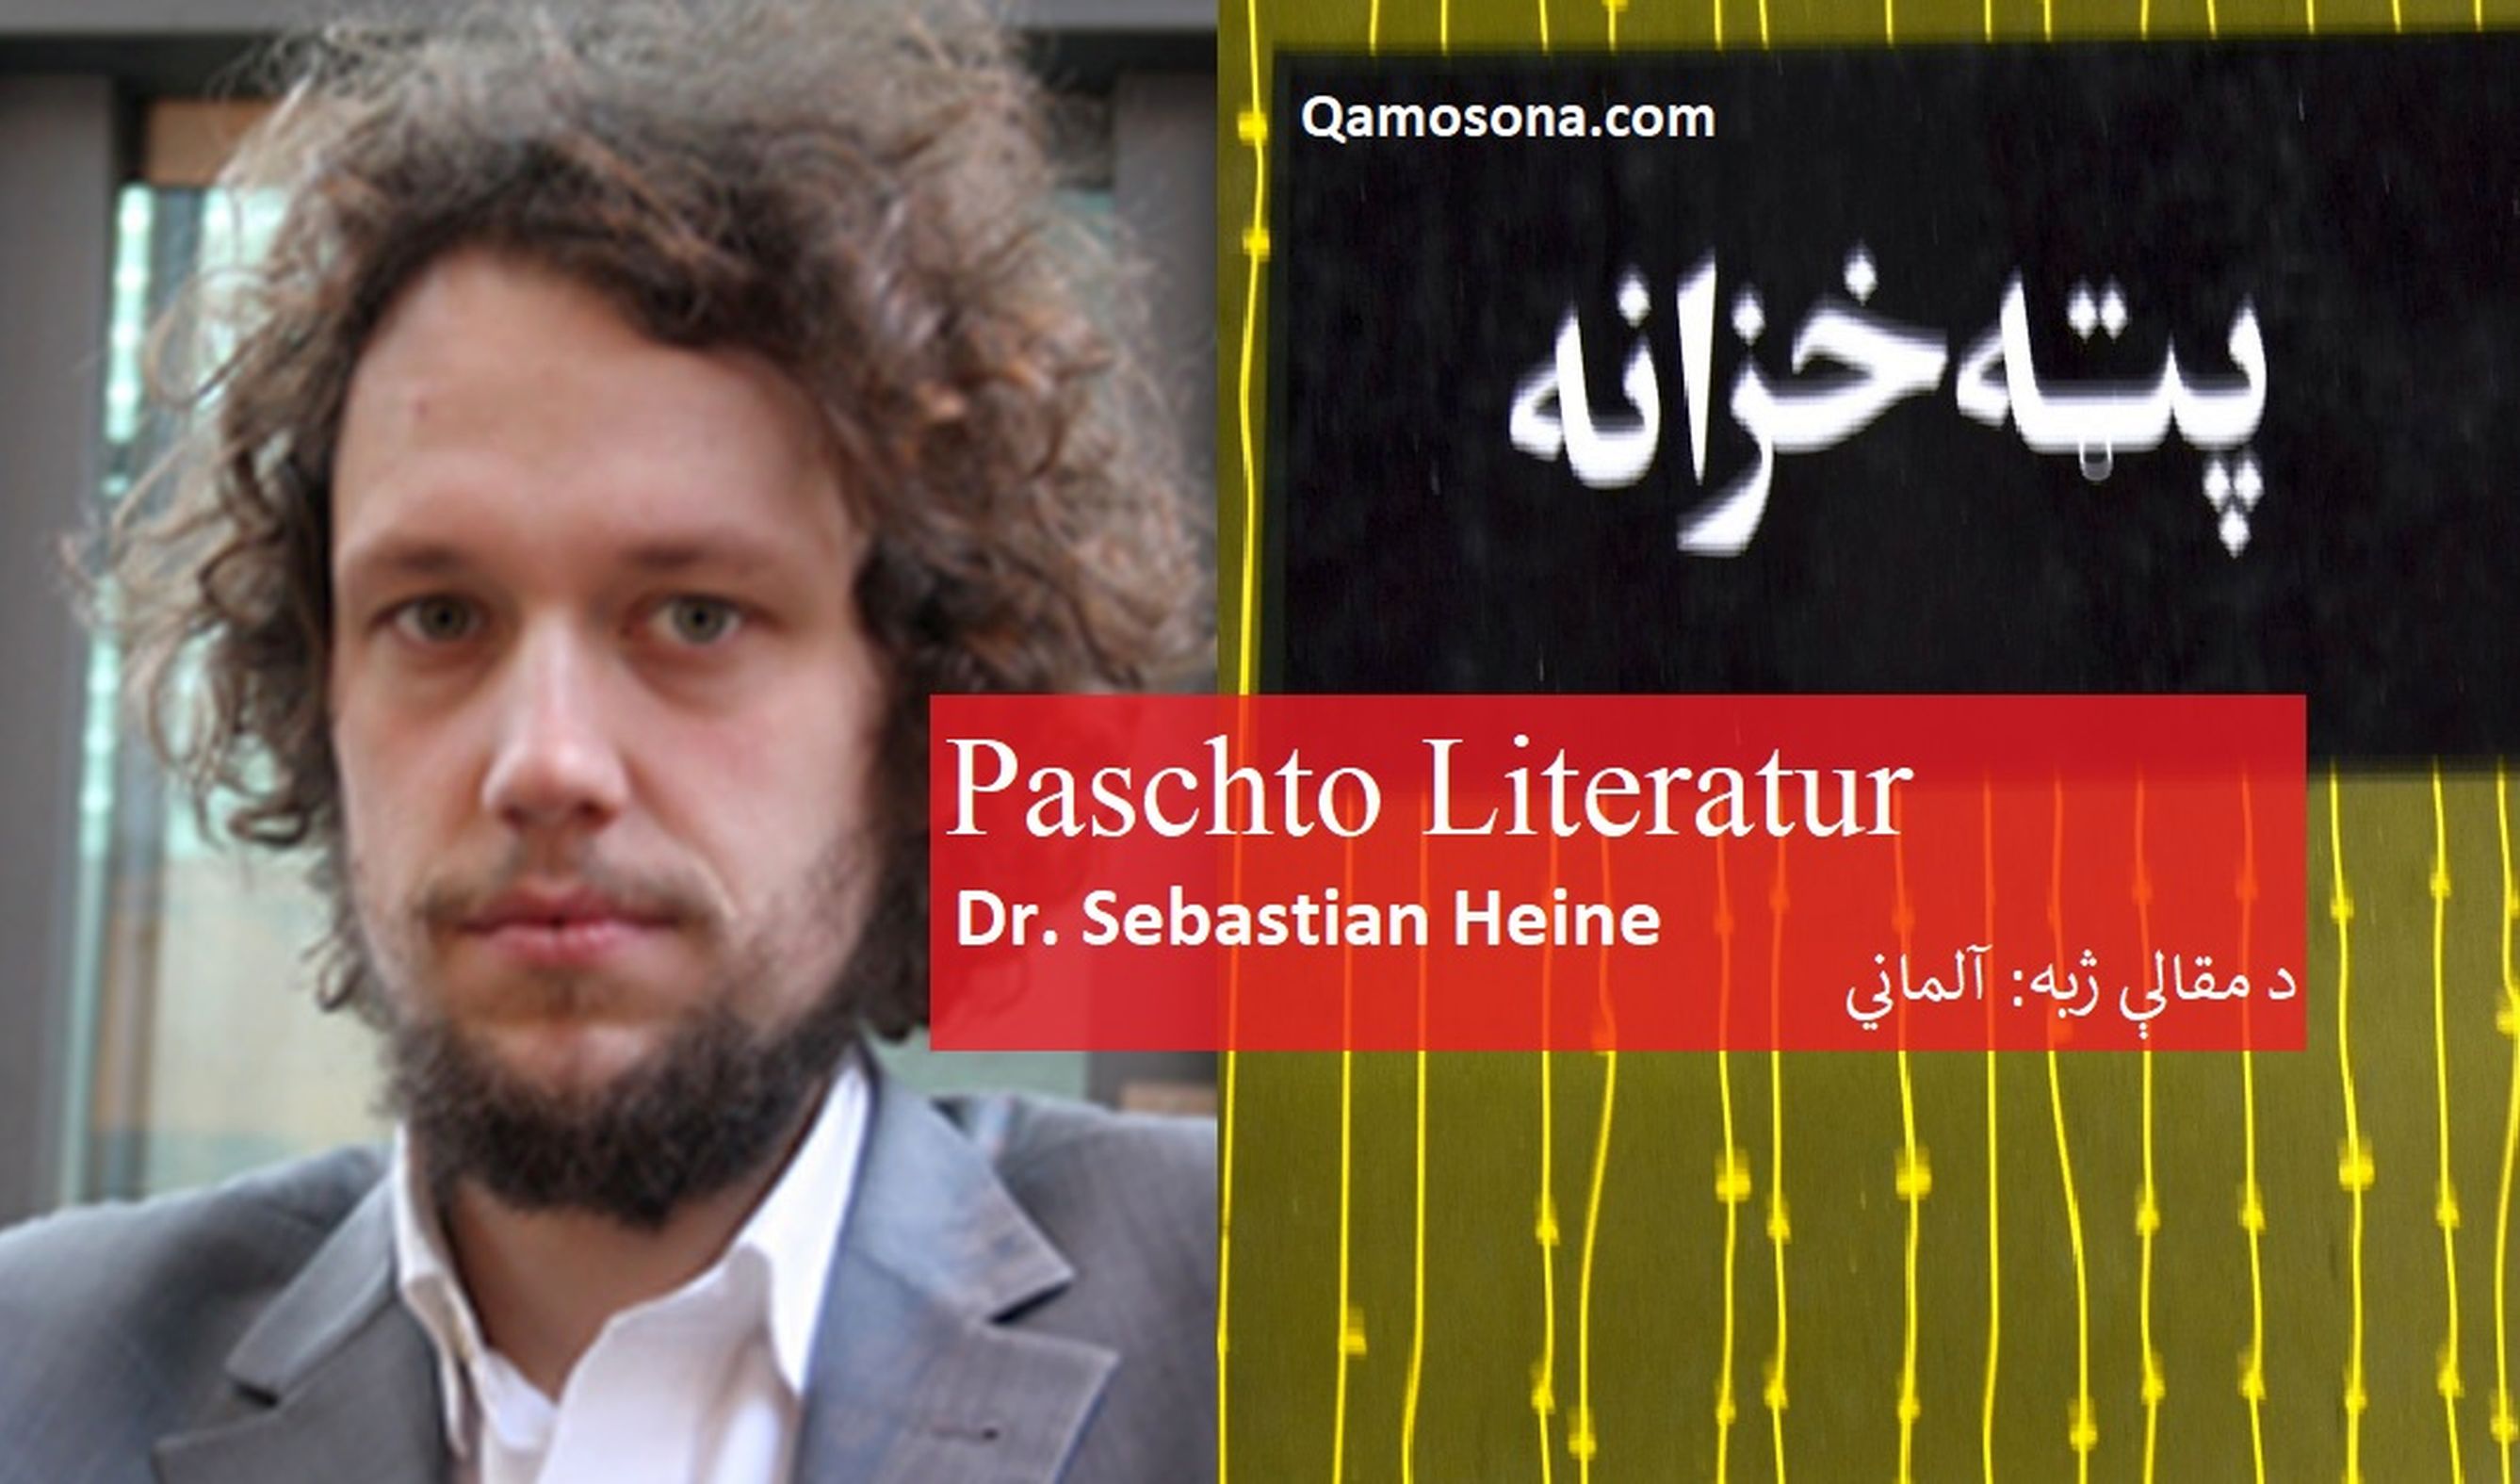 Paschto Literatur (Dr. Sebastian Heine)